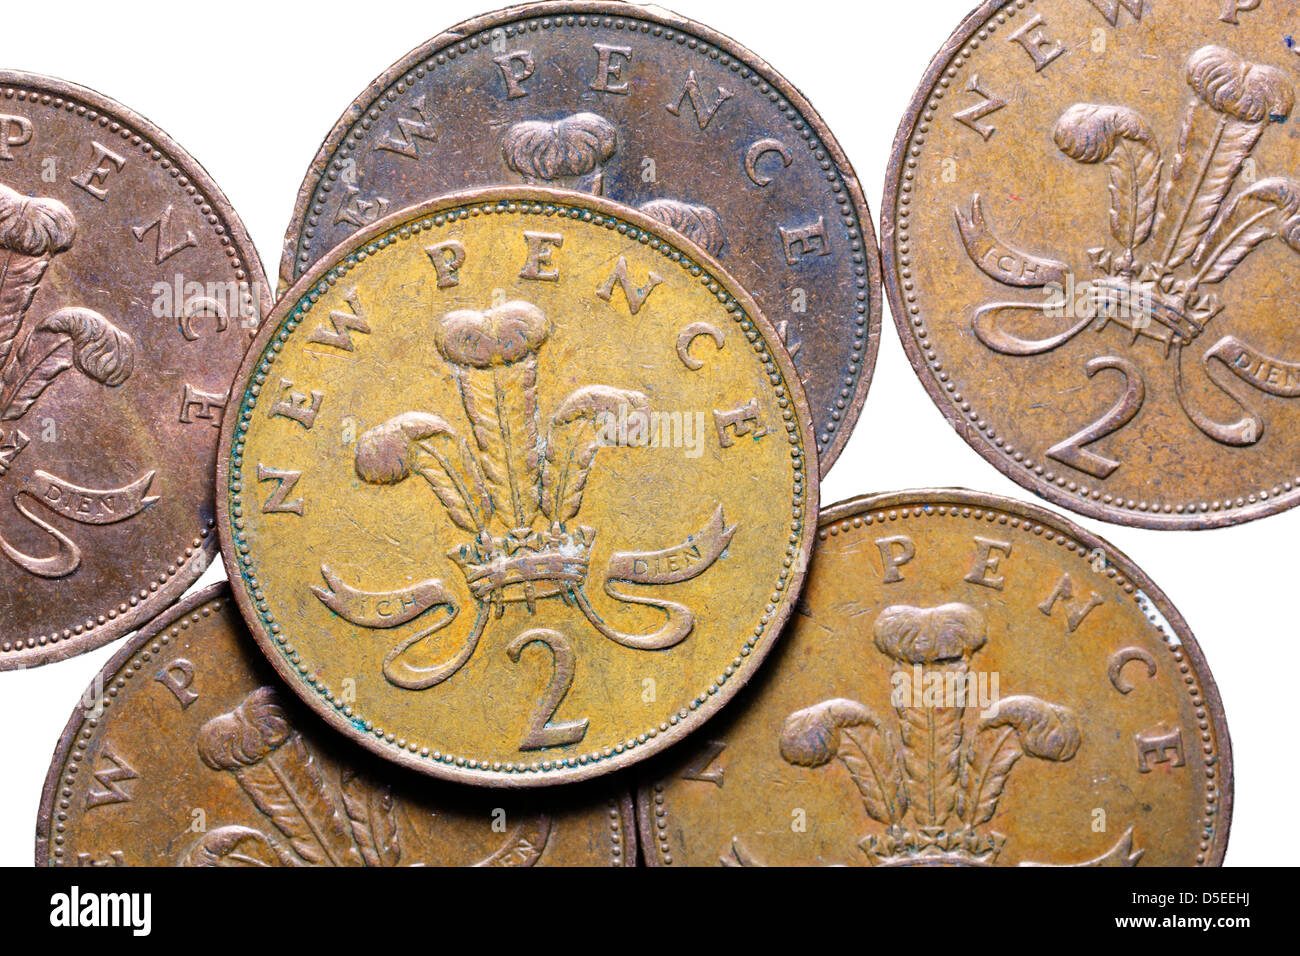 Pila de 2 peniques monedas, UK, sobre fondo blanco. Foto de stock